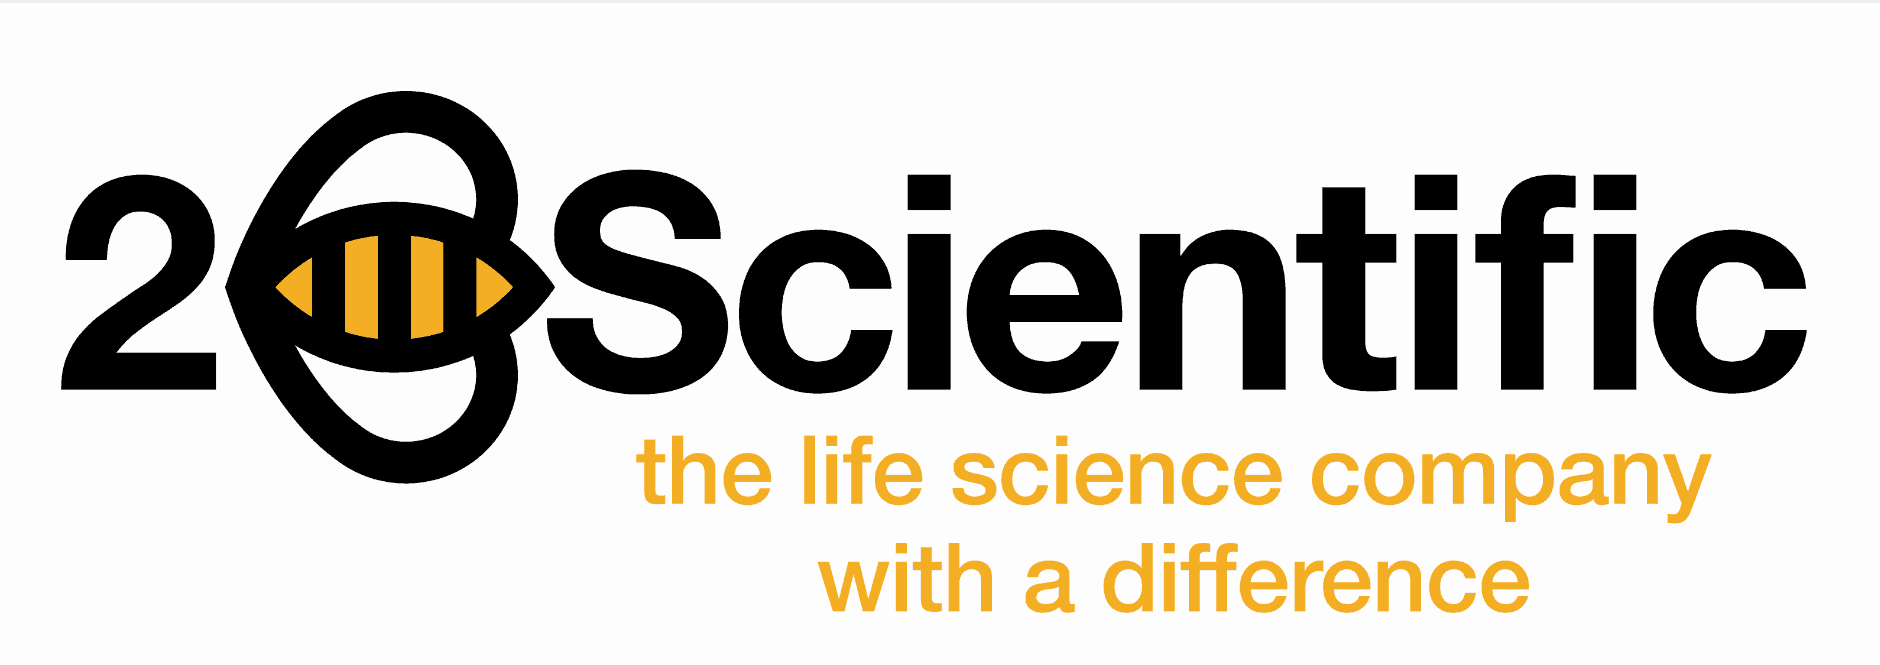 2B Scientific logo